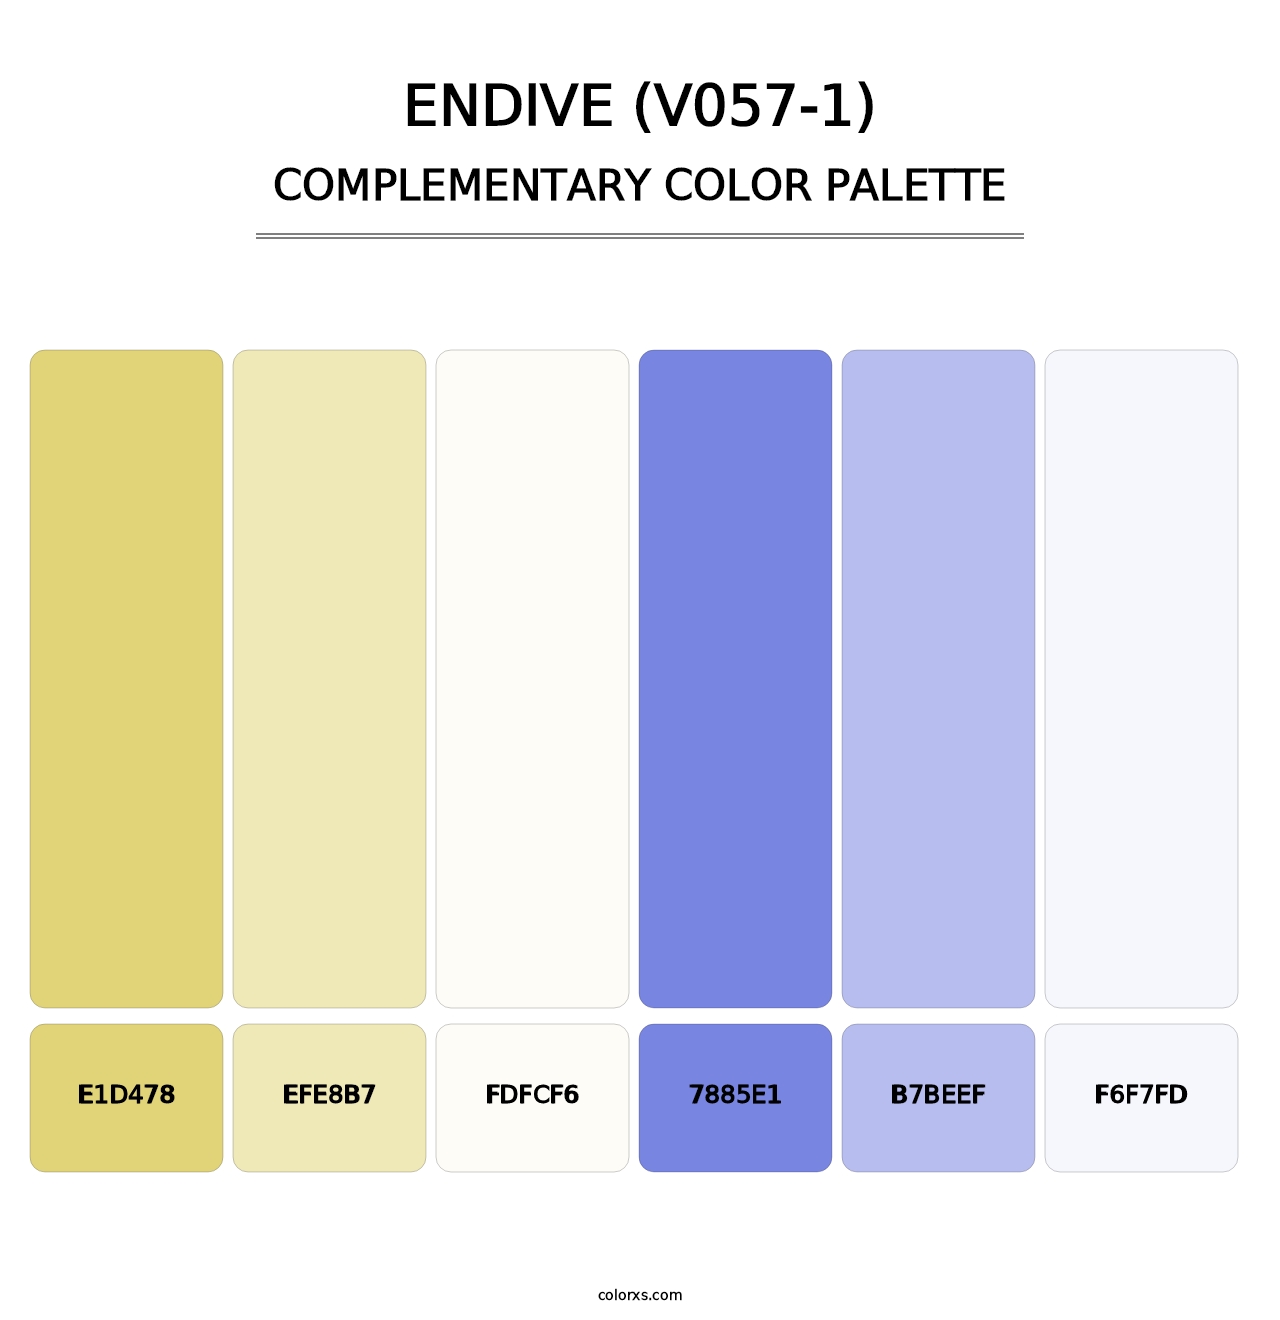 Endive (V057-1) - Complementary Color Palette